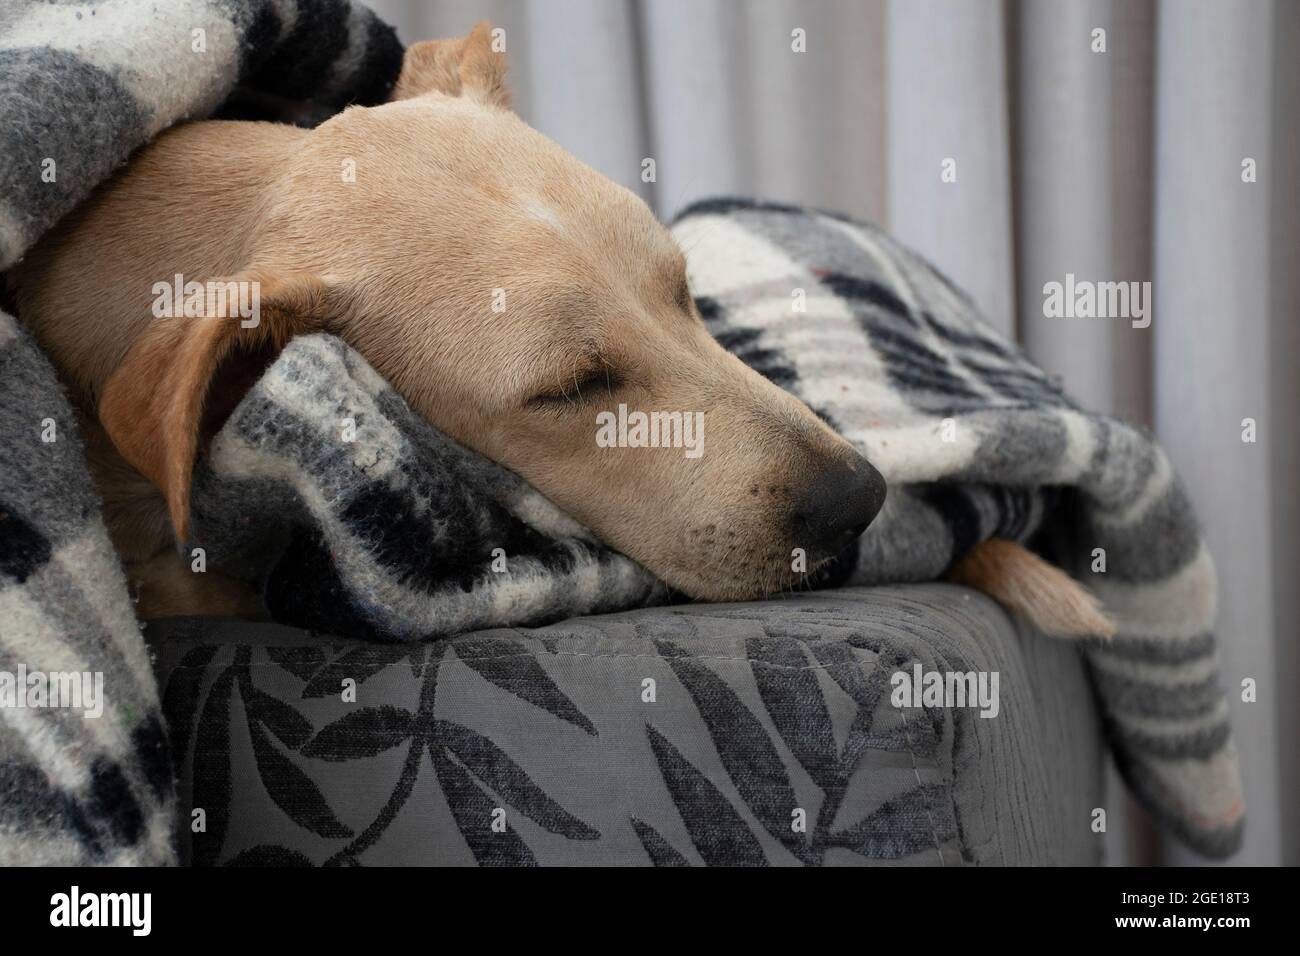 Müder Hund schläft unter einer Decke auf einem Ottomanen, das Laken bedeckt  den größten Teil des Körpers, lässt nur das Gesicht offen, die Augen  geschlossen. Hund nimmt einen Tag Nickerchen. Wintersaison Stockfotografie -